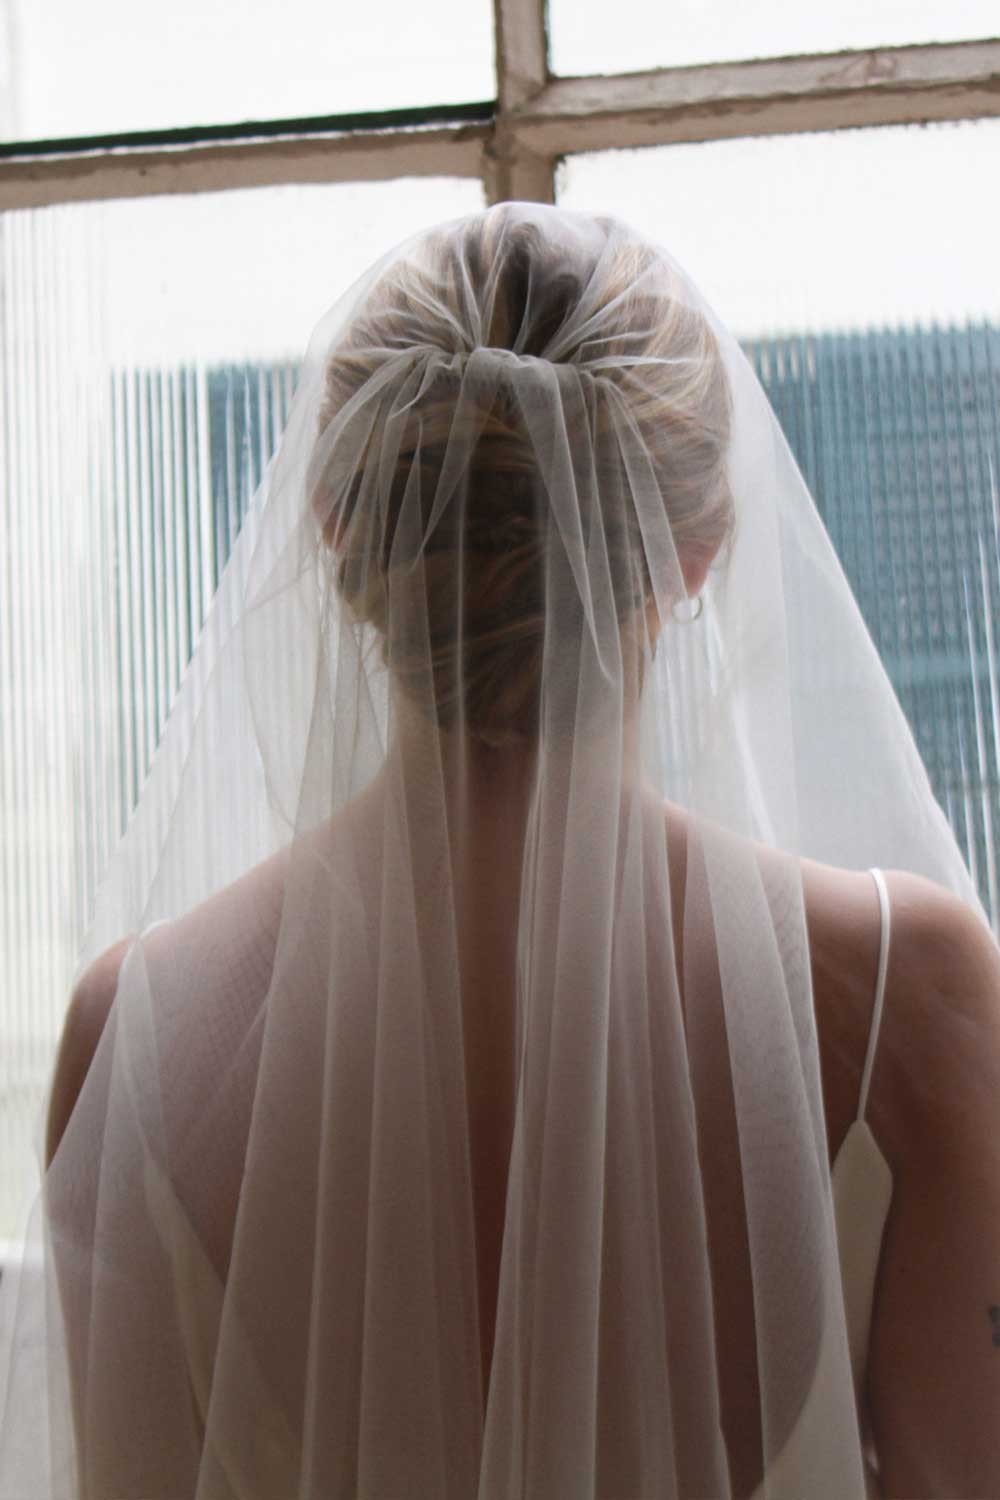 Short veil with lace trim